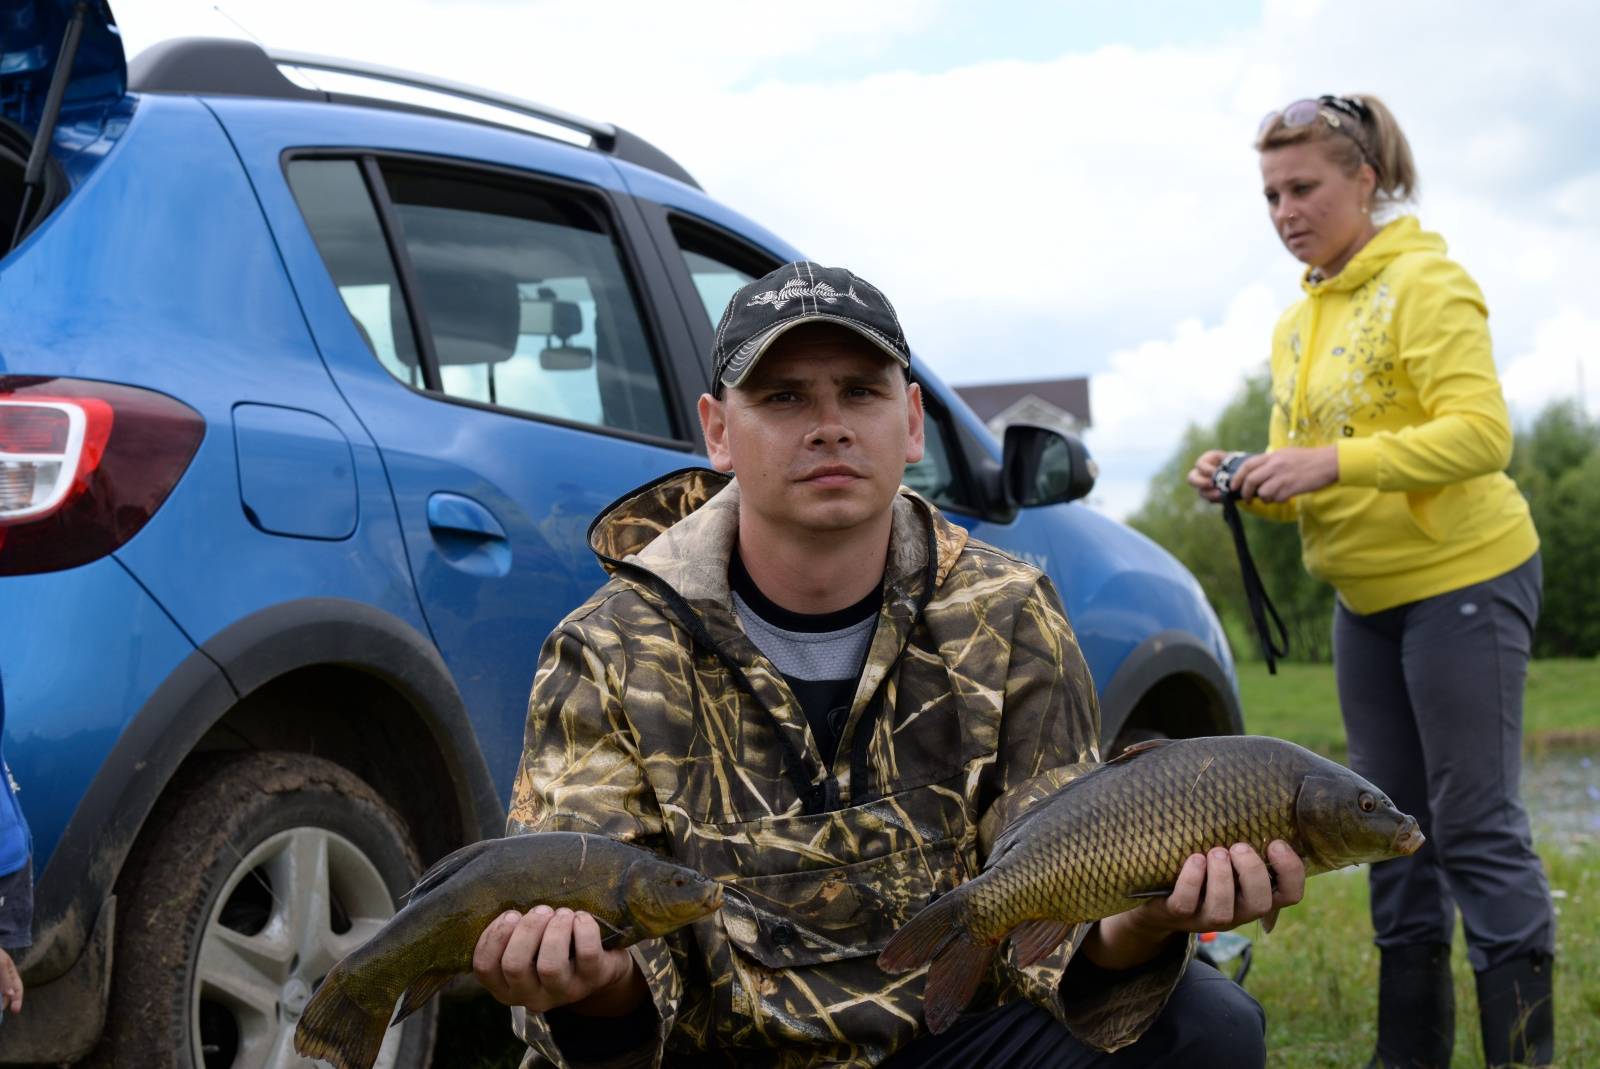 Рыбалка в рязанской области - озера, реки, водохранилища, платные места